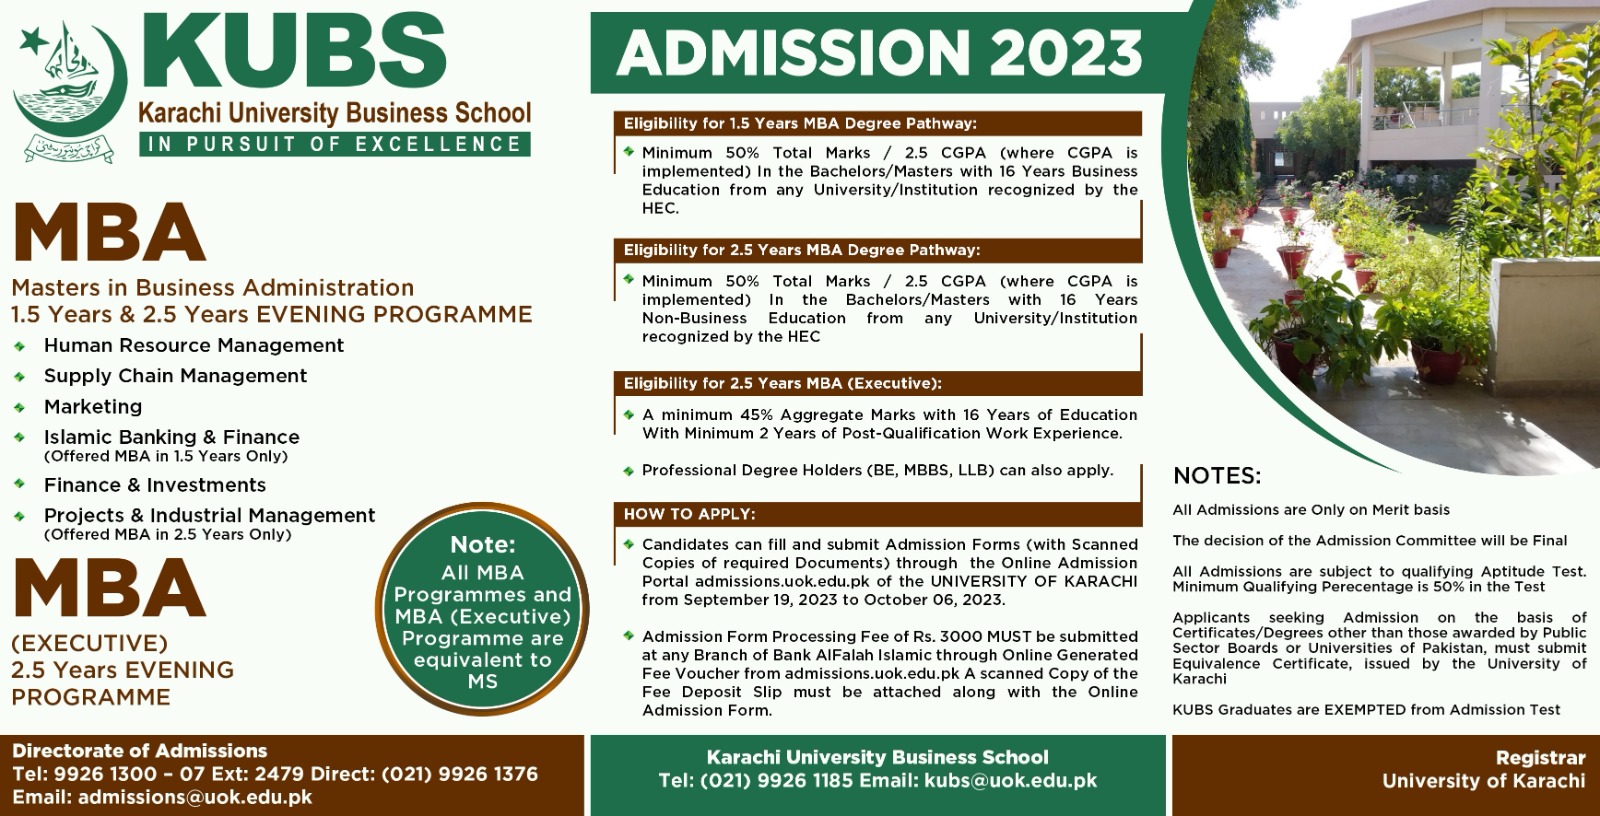 University of Karachi MBA Admission 2023